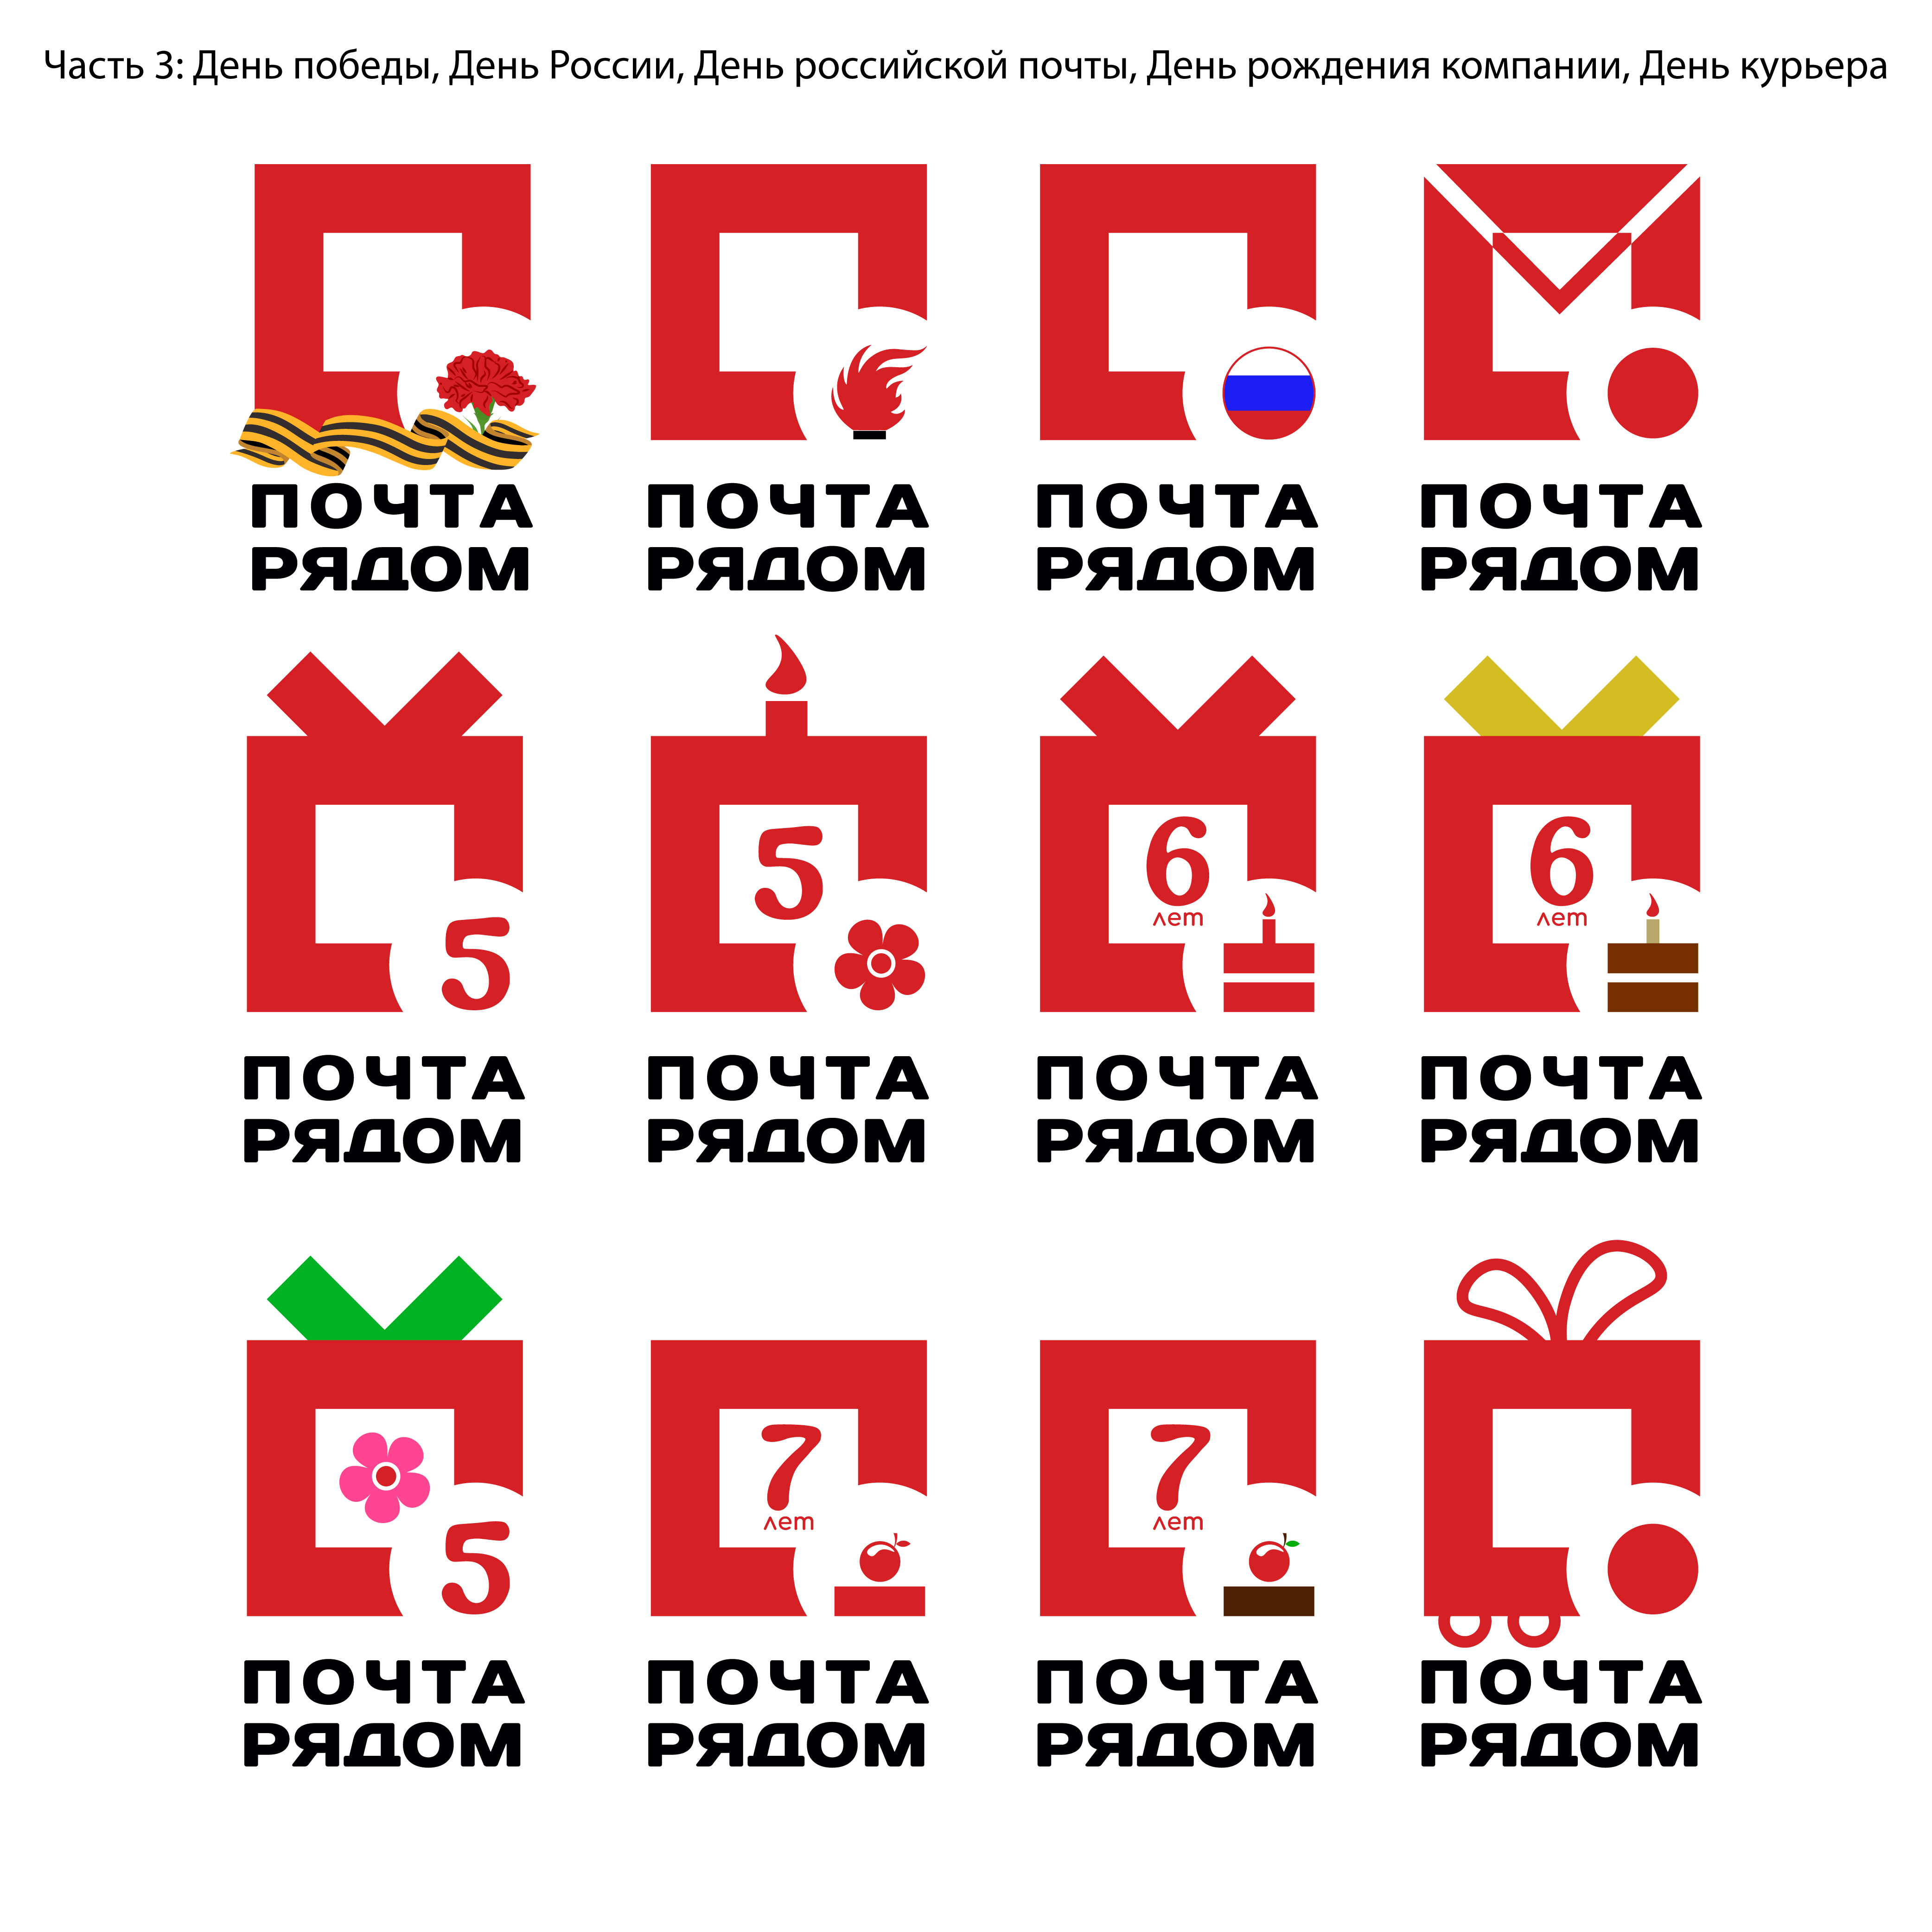 Логотипы Почта рядом часть 3.jpg